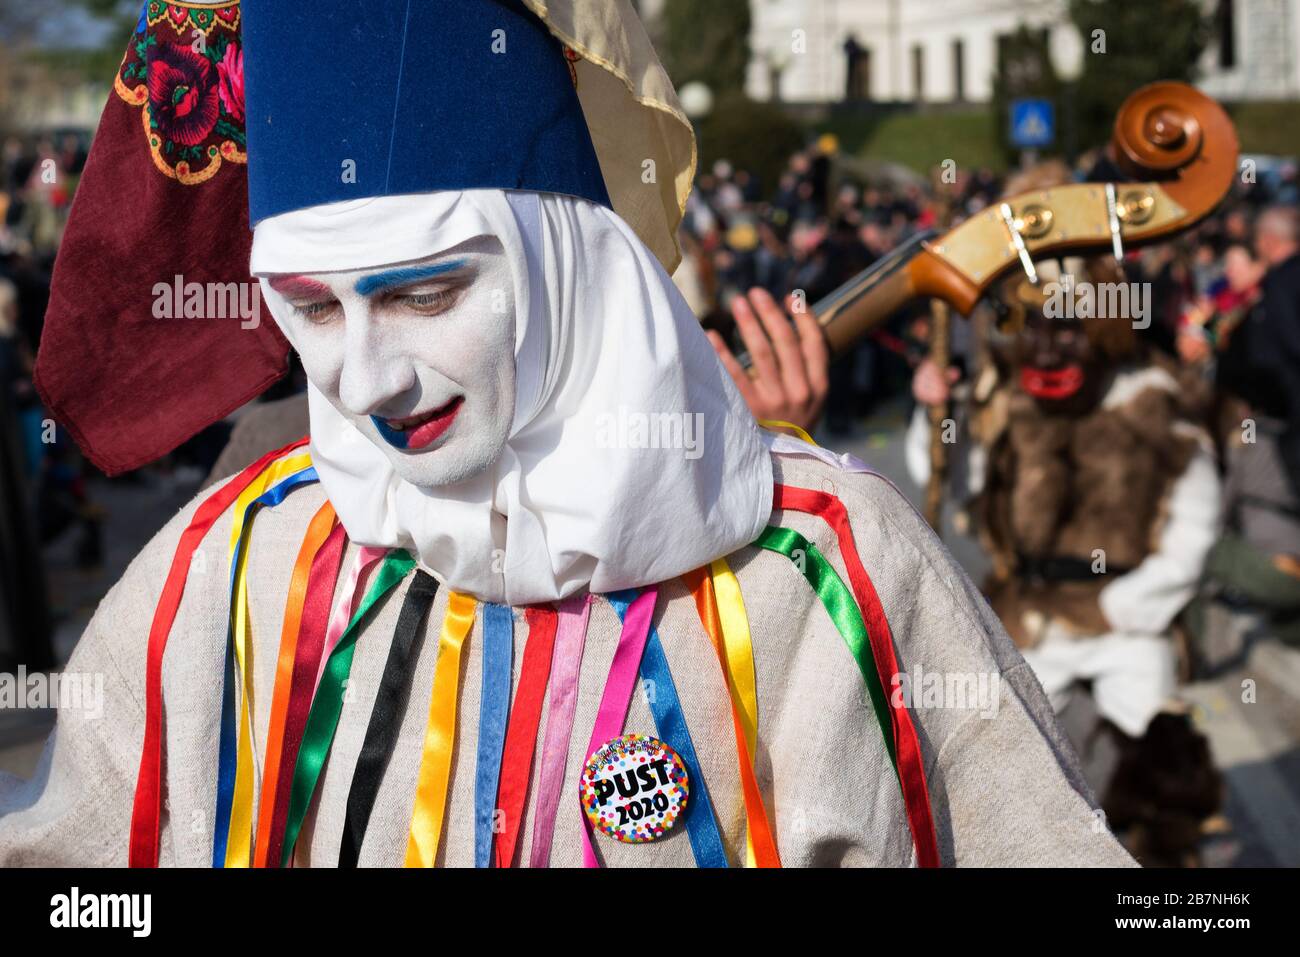 Uomo in costume di carnevale durante la parata di carnevale di Pust. Costume tipico del canale d'Agordo, Belluno. San Pietro al Natisone, Udine, Italia. Foto Stock